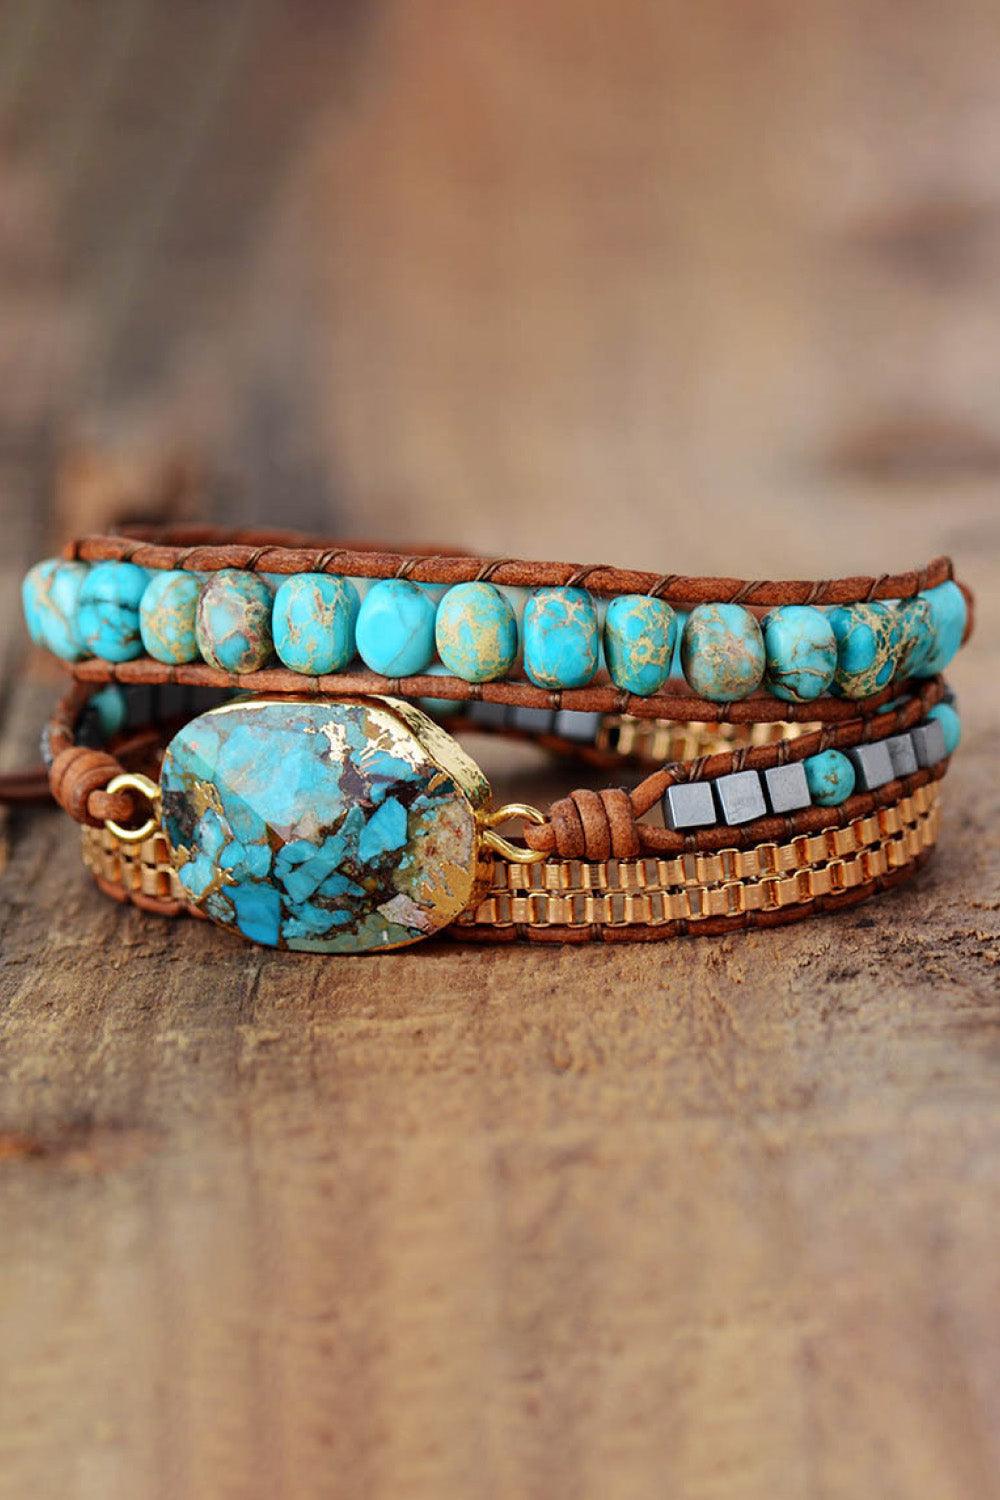 Handmade Natural Stone Copper Bracelet - Crazy Like a Daisy Boutique #